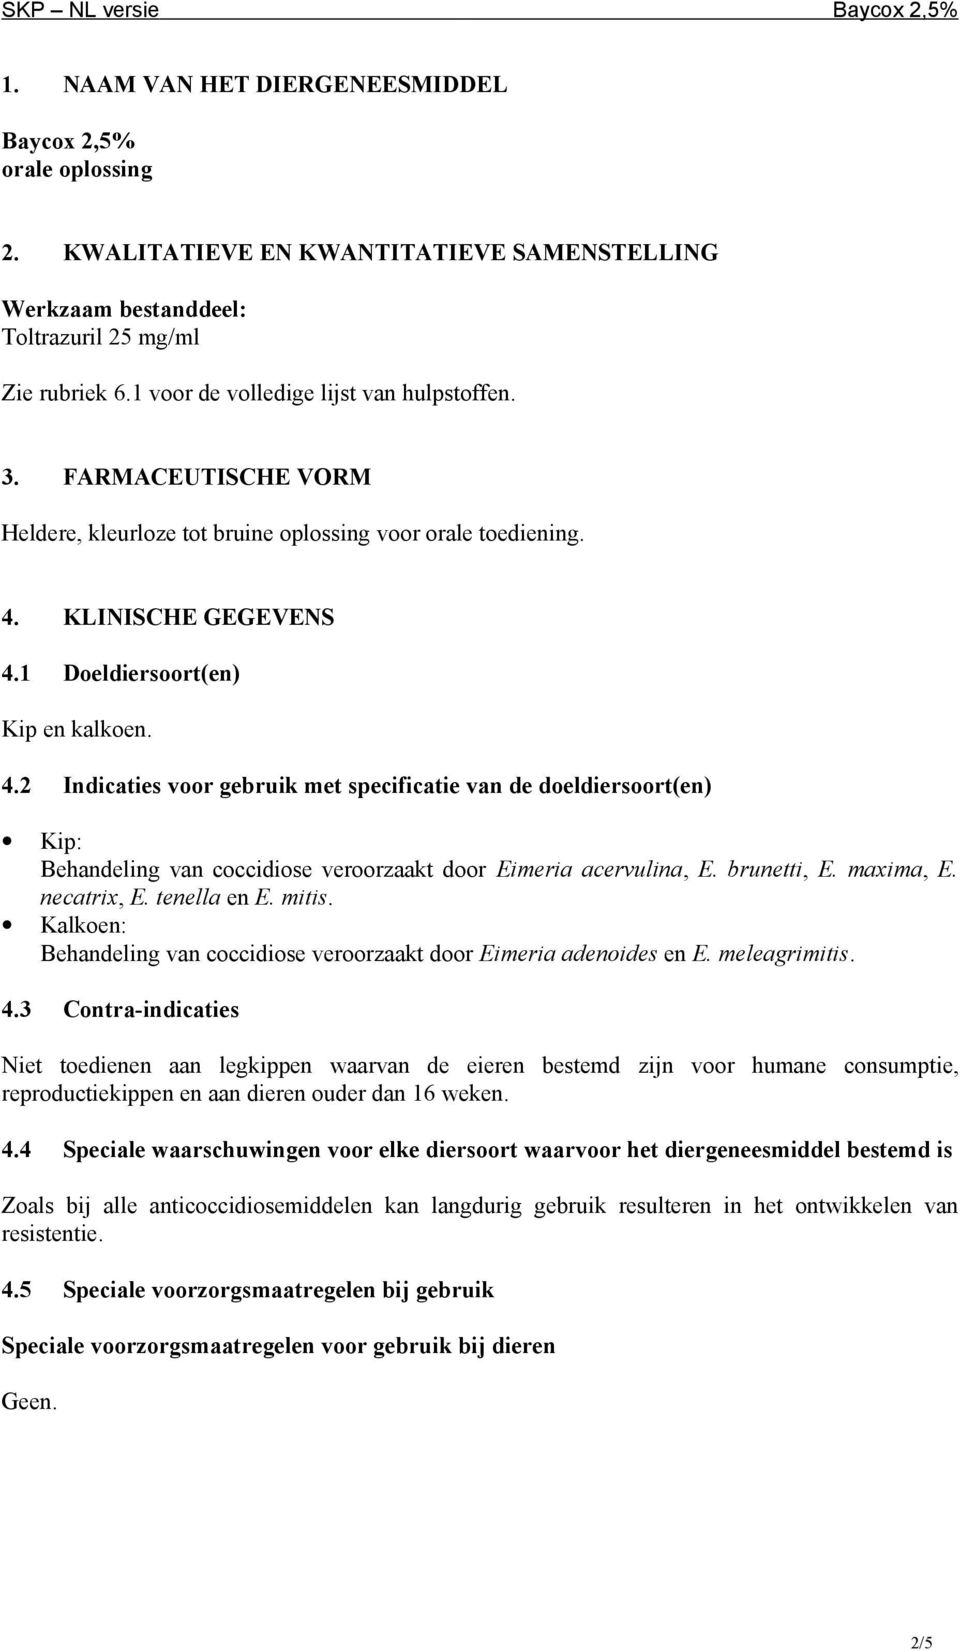 KLINISCHE GEGEVENS 4.1 Doeldiersoort(en) Kip en kalkoen. 4.2 Indicaties voor gebruik met specificatie van de doeldiersoort(en) Kip: Behandeling van coccidiose veroorzaakt door Eimeria acervulina, E.